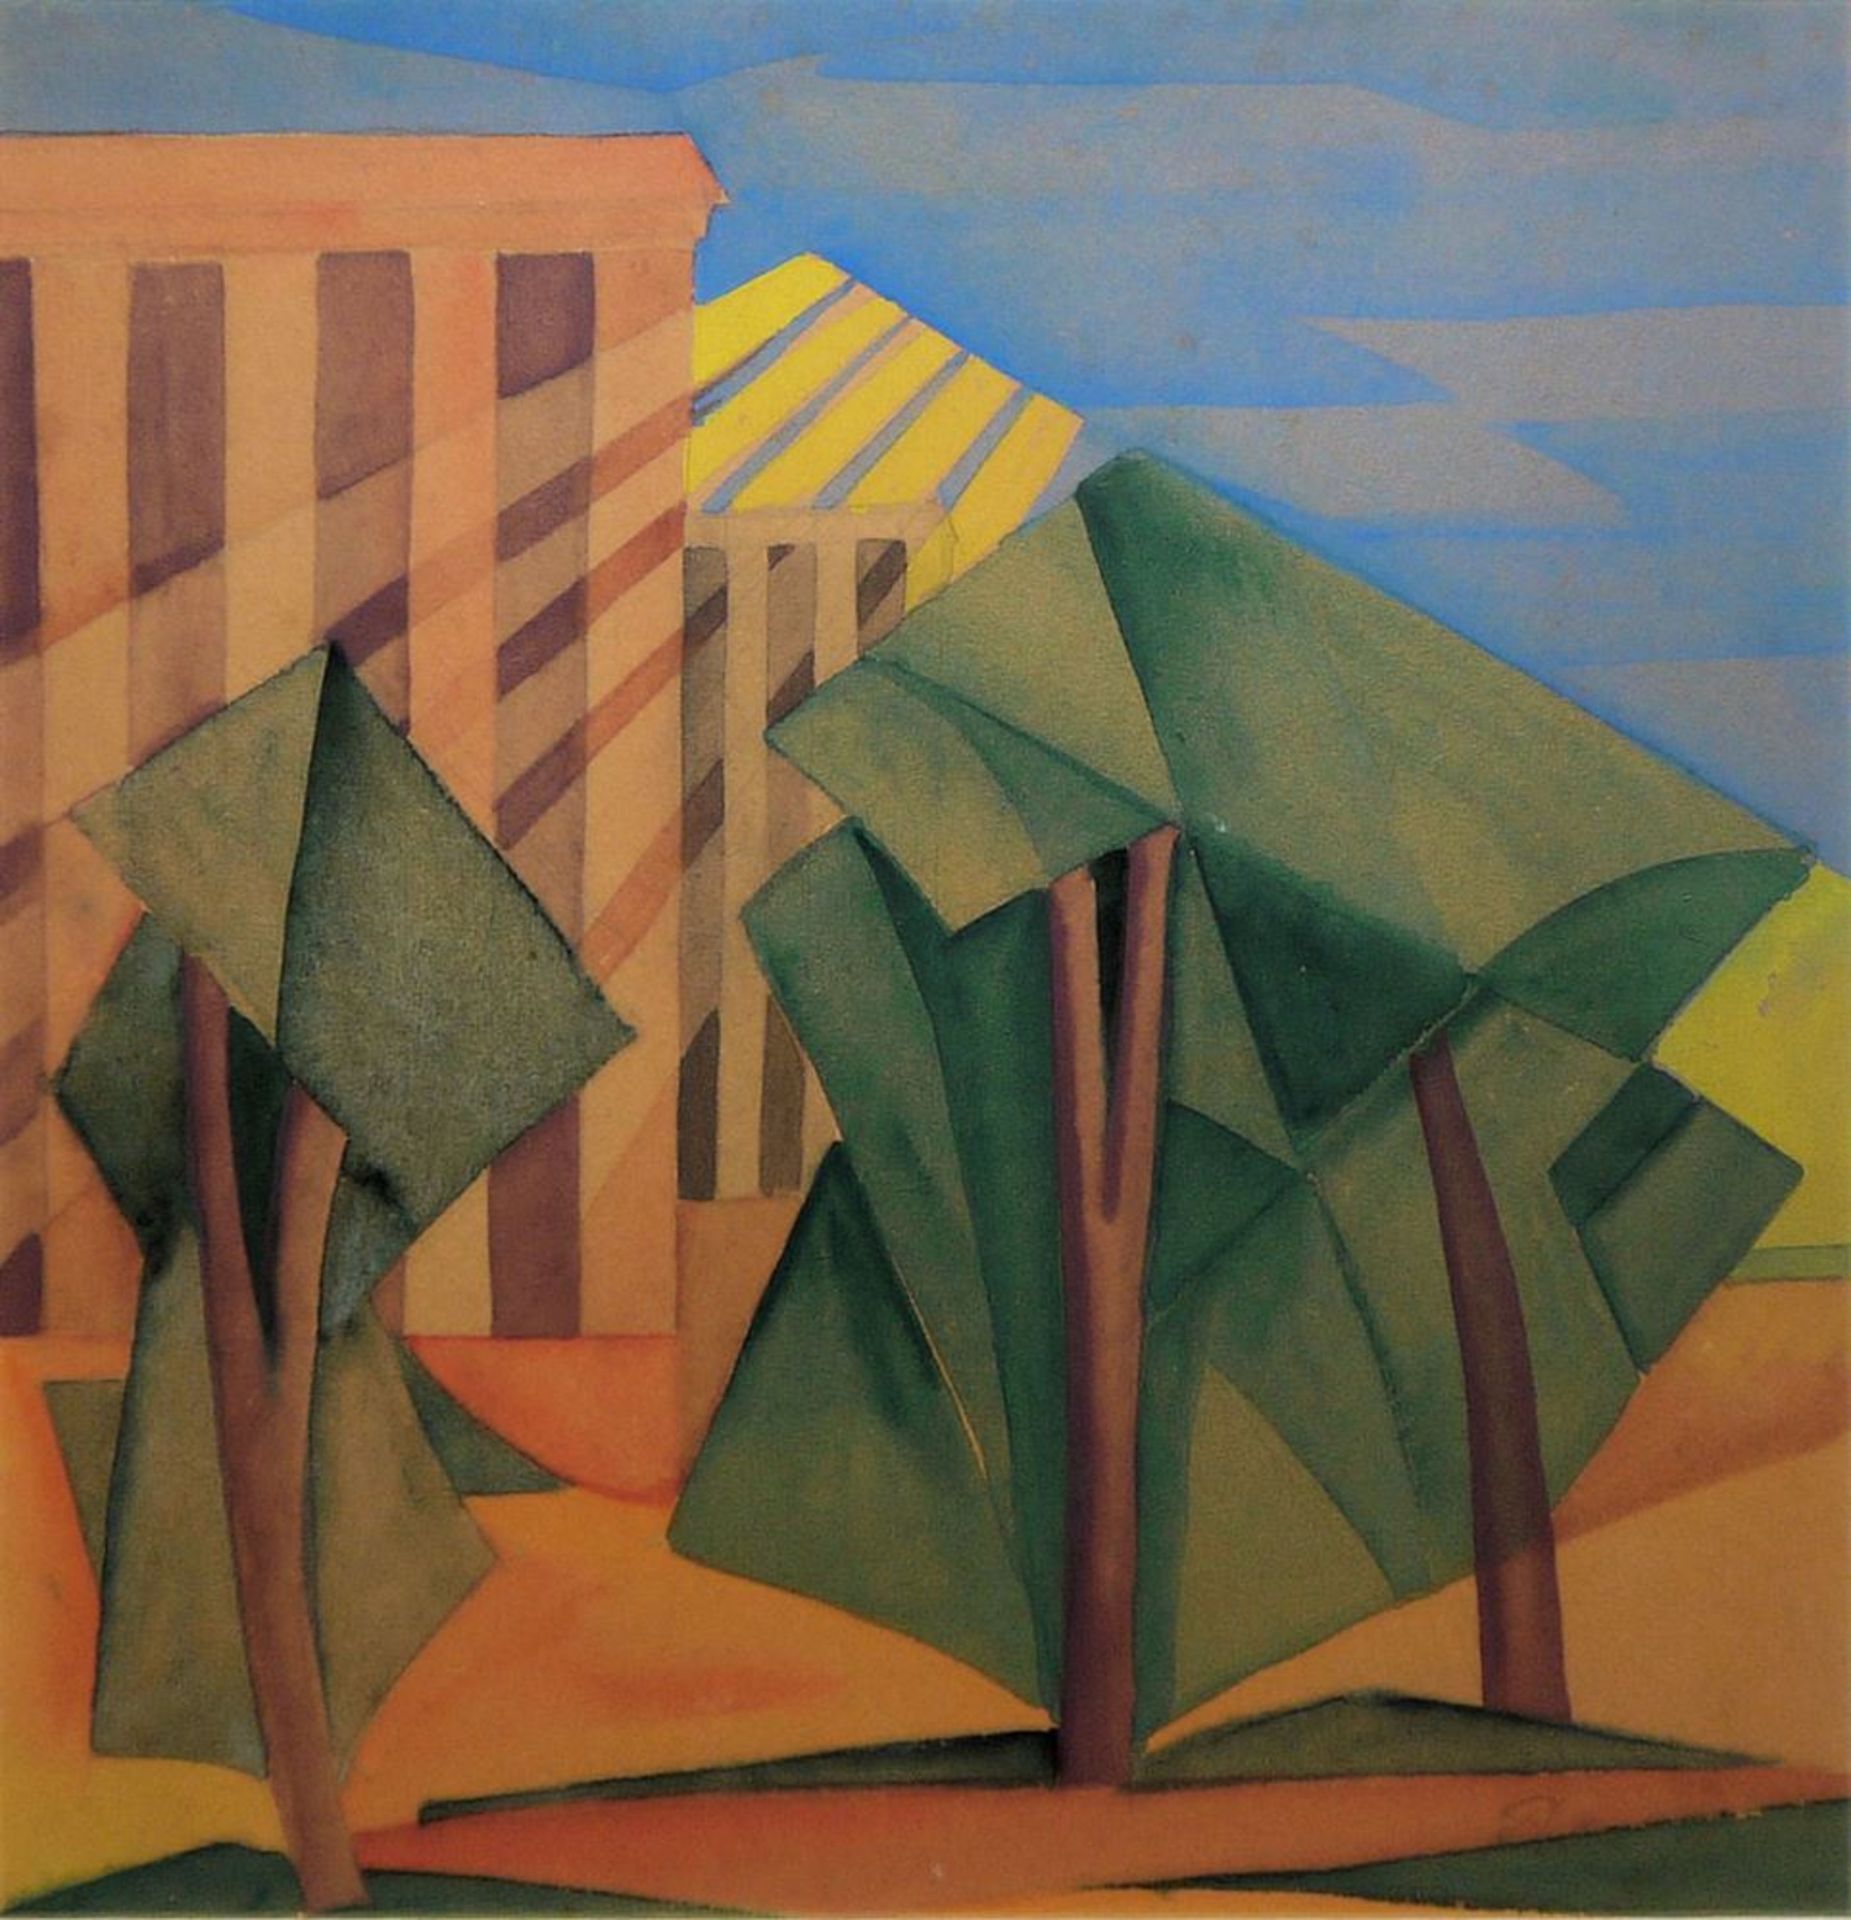 Peter Koch, "Sommer", kubistisch-futuristische Gouache, entstanden während seines USA Aufenthaltes  - Bild 3 aus 3